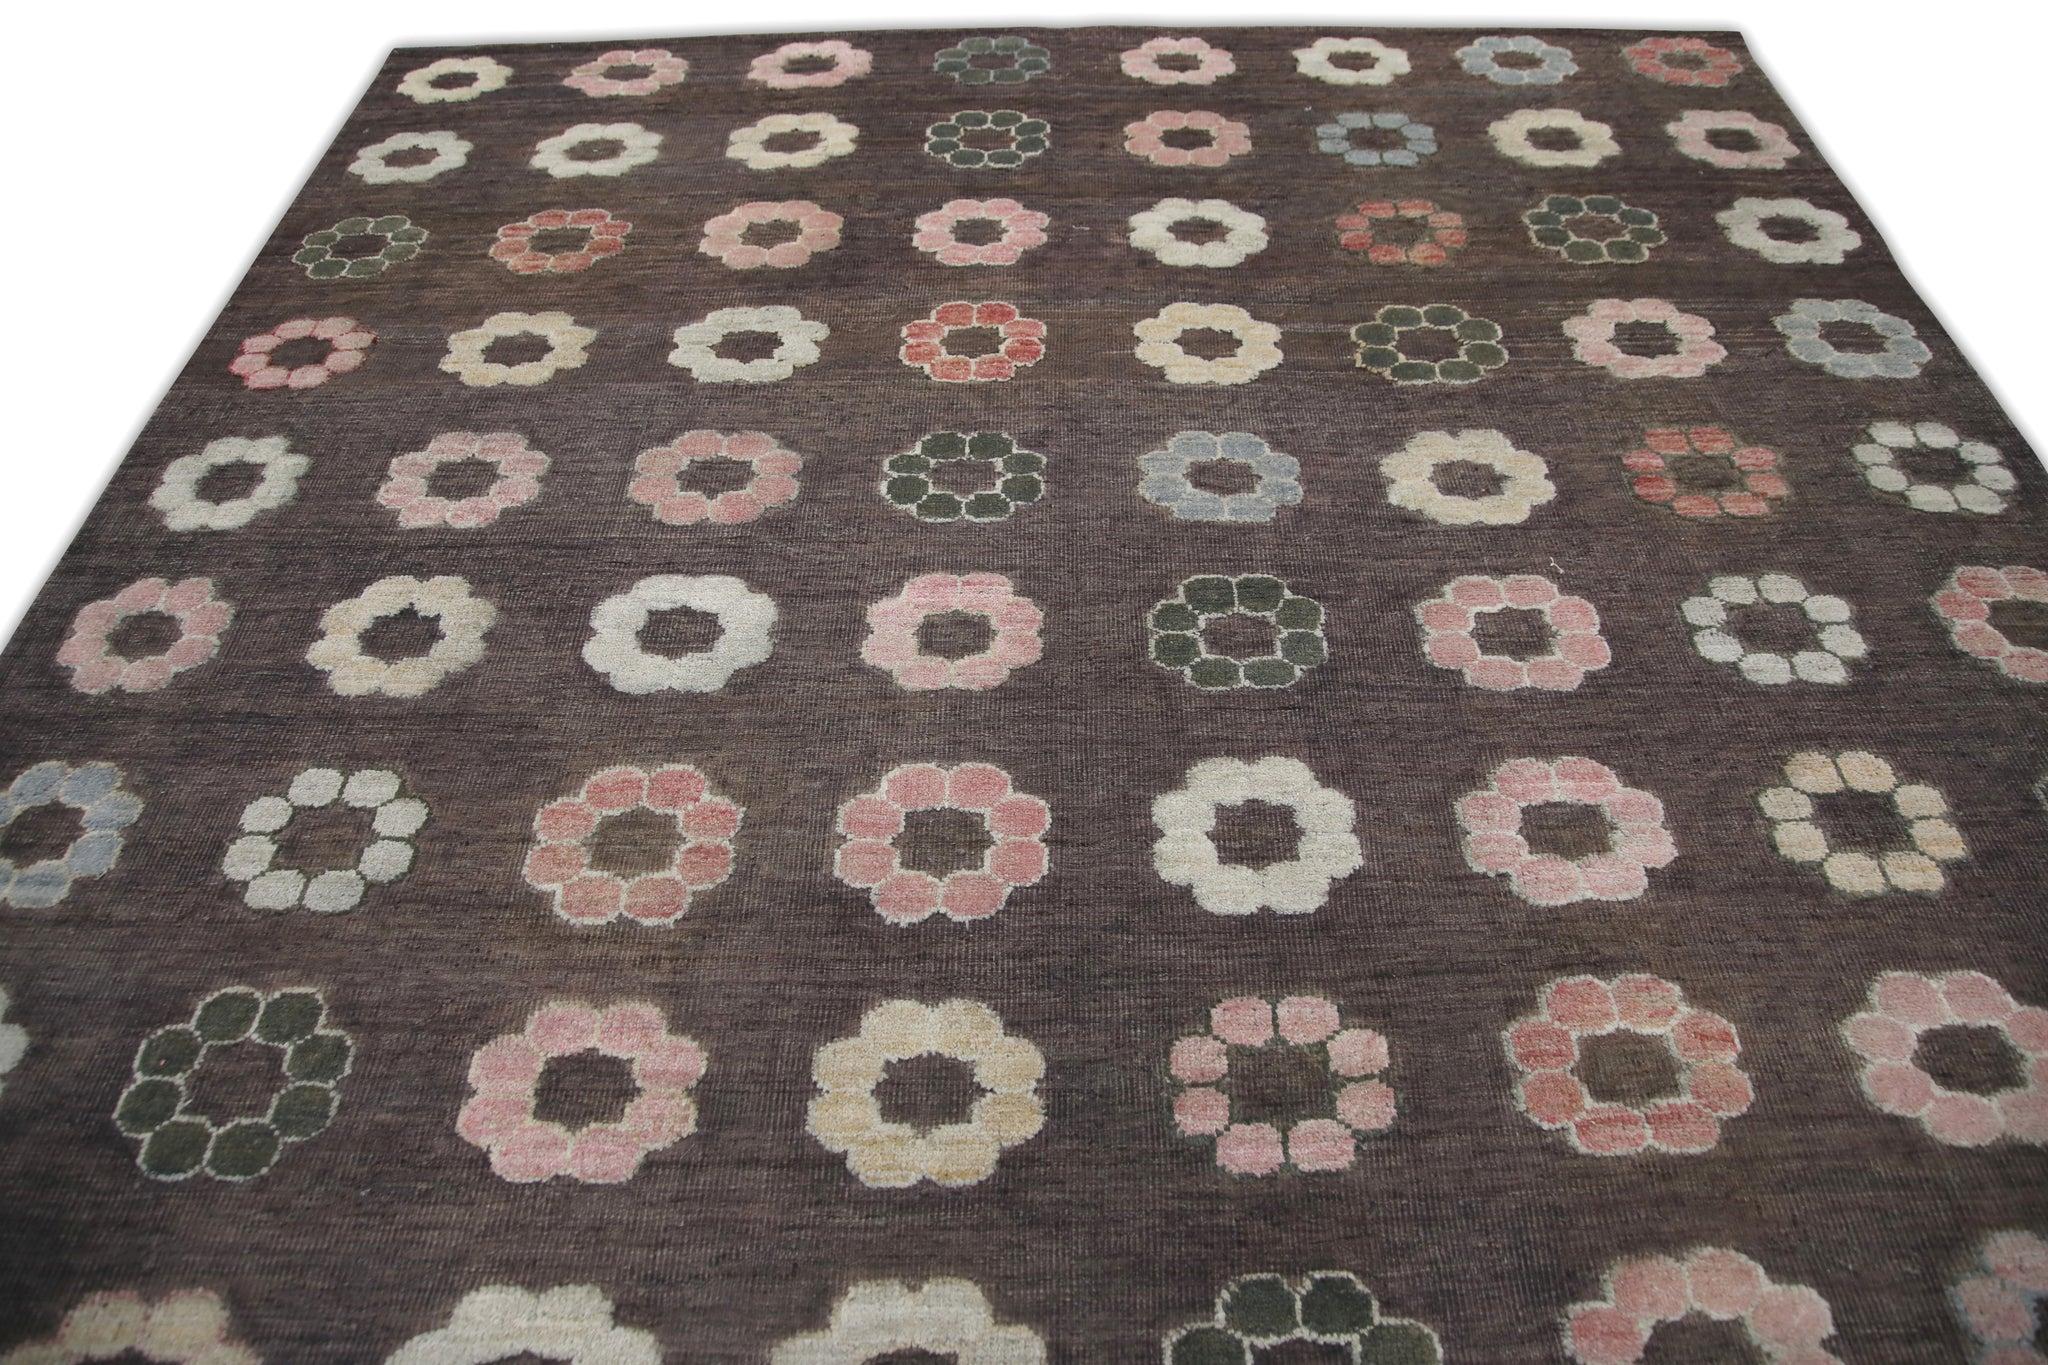 Hand-Woven Brown Flatweave Handmade Wool Rug in Pink Floral Pattern 8'8